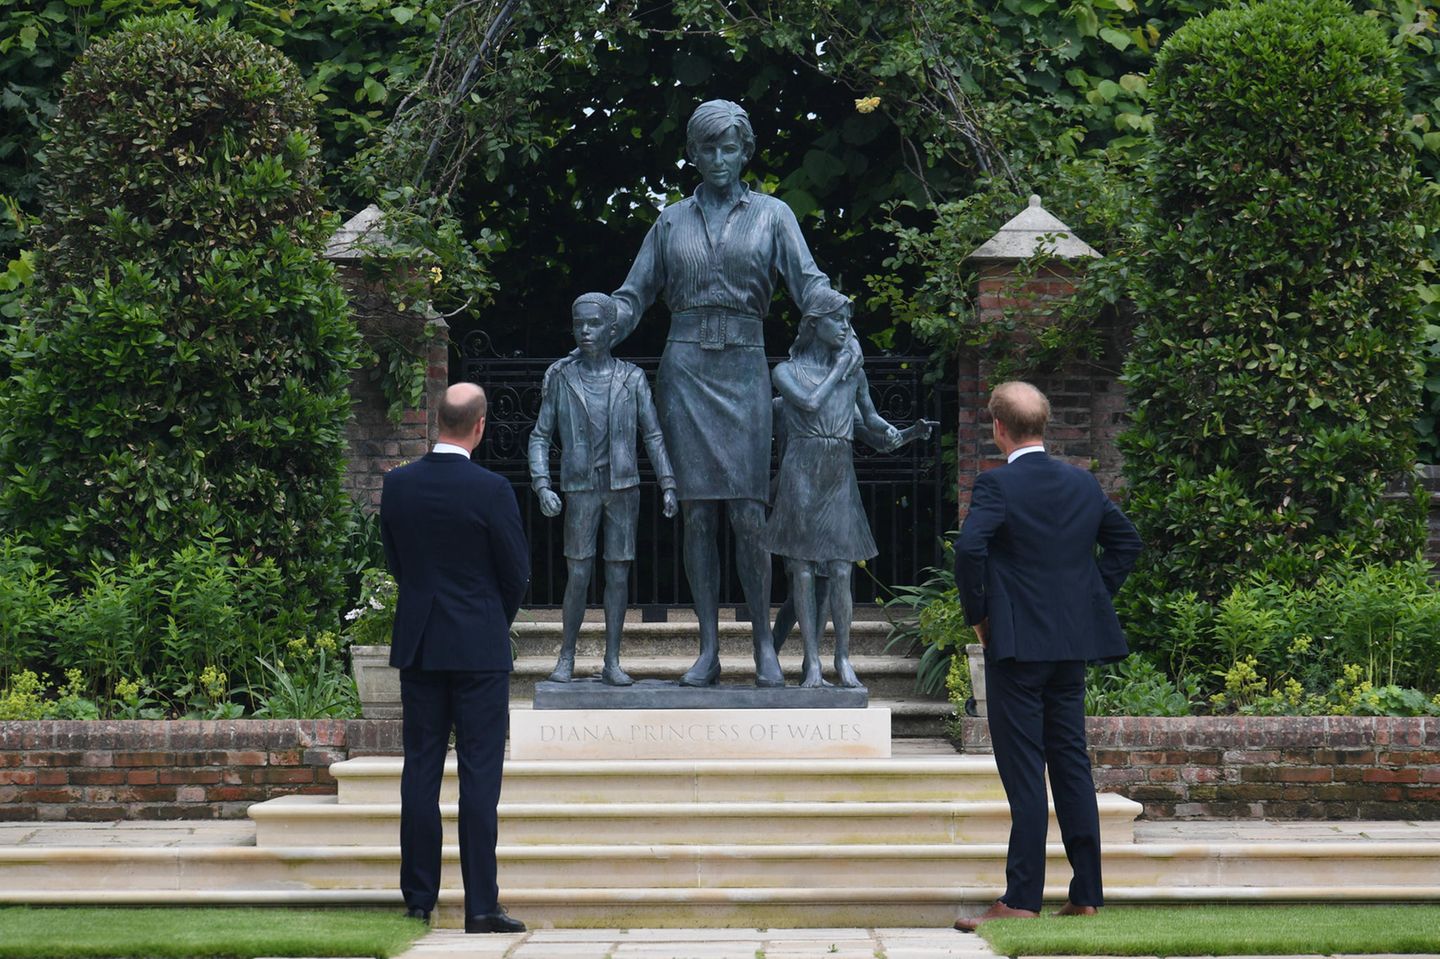 Prinz William und Prinz Harry betrachten das imposante Denkmal, das sie zu Ehren ihrer verstorbenen Mutter anfertigen haben lassen. Prinzessin Diana wird überraschenderweise nicht alleine abgebildet, sondern zusammen mit zwei Kindern, über die sie schützend ihre Hände hält - ein starkes Symbol für ihre Gutherzigkeit und ihr soziales Engagement.